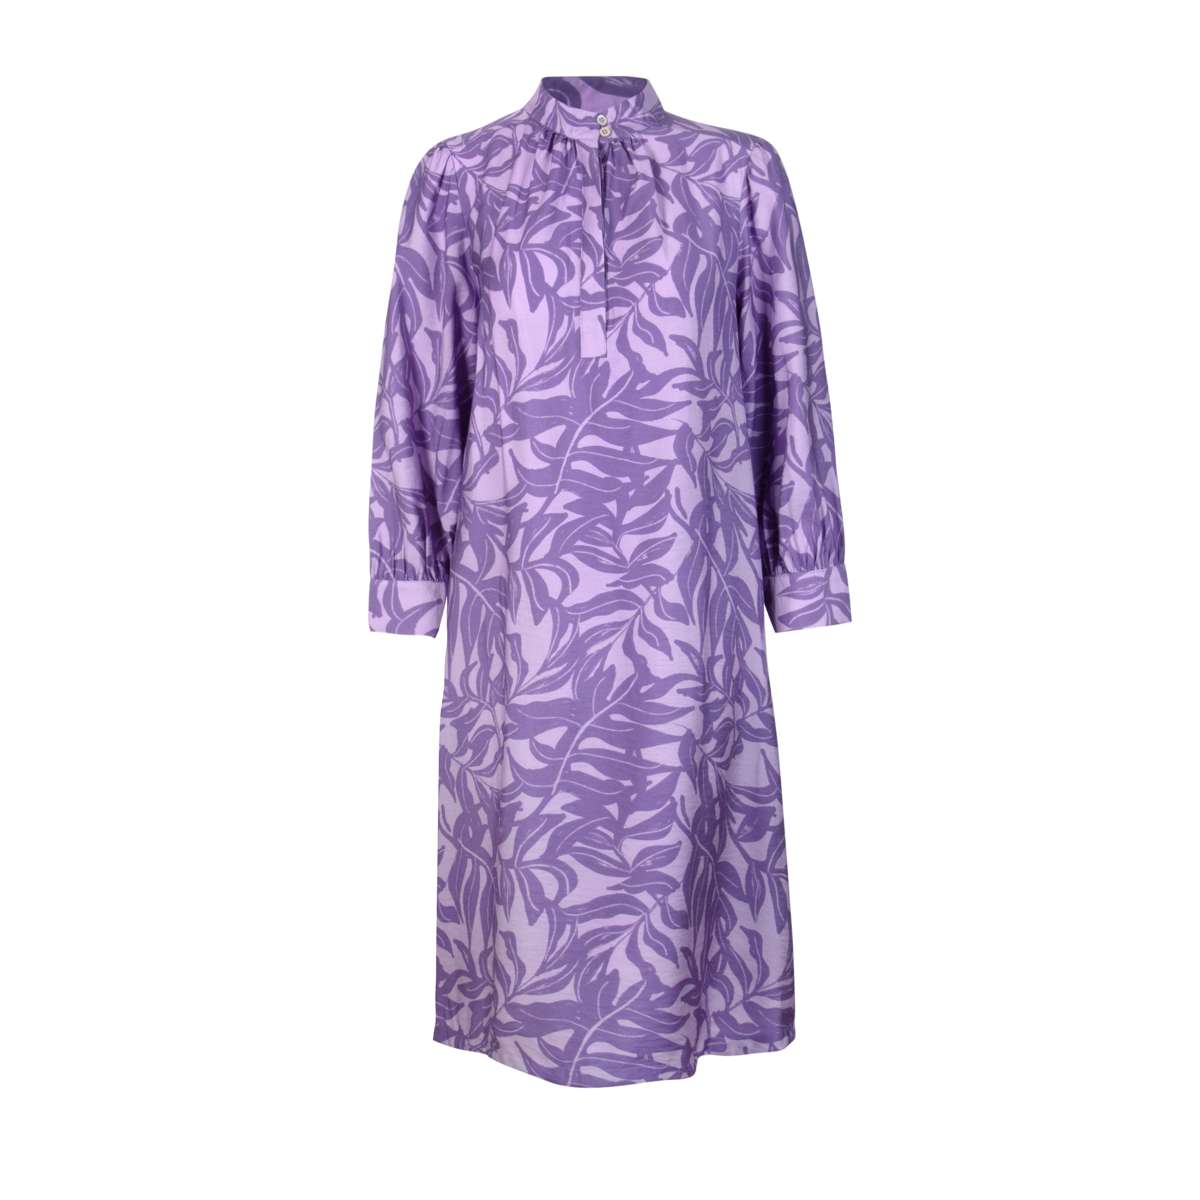 Платье-блузка с тропическим принтом